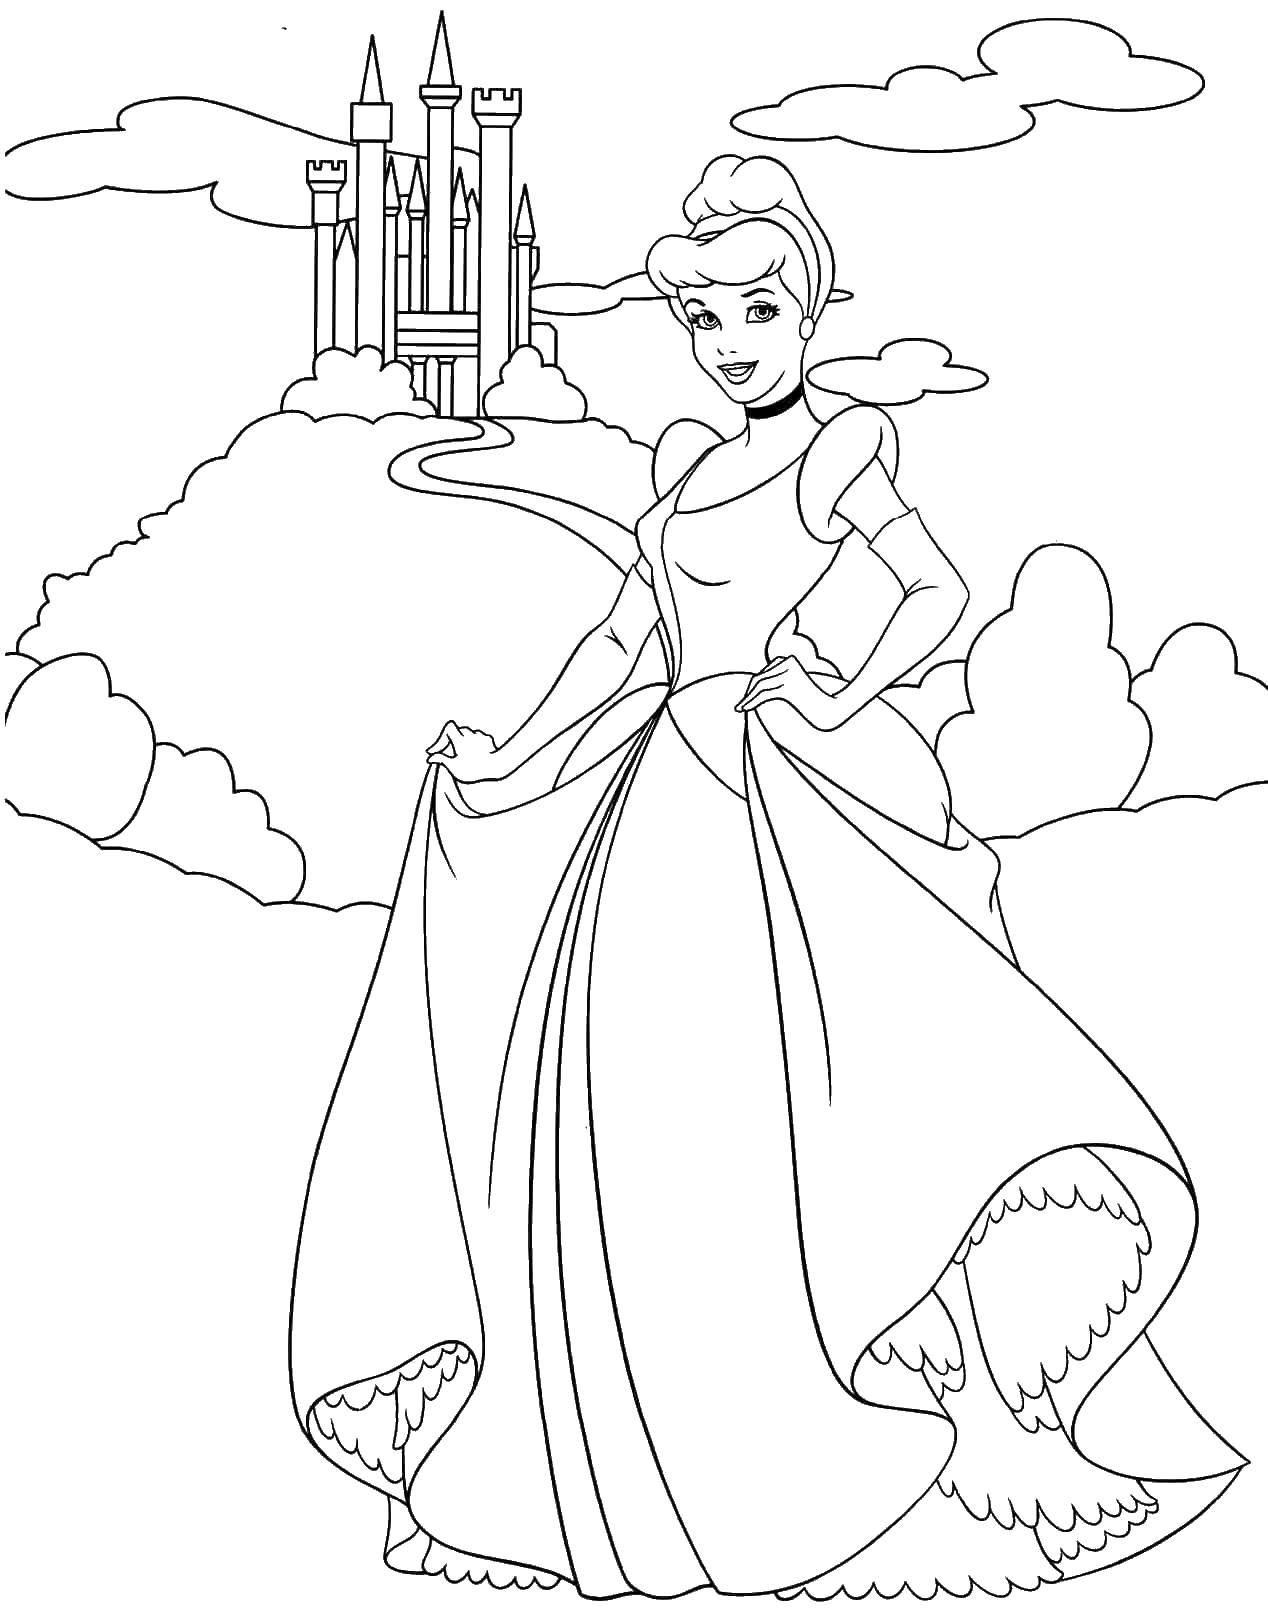 Название: Раскраска Золушка у замка. Категория: Принцессы. Теги: принцессы, мультфильмы, сказки, Золушка.